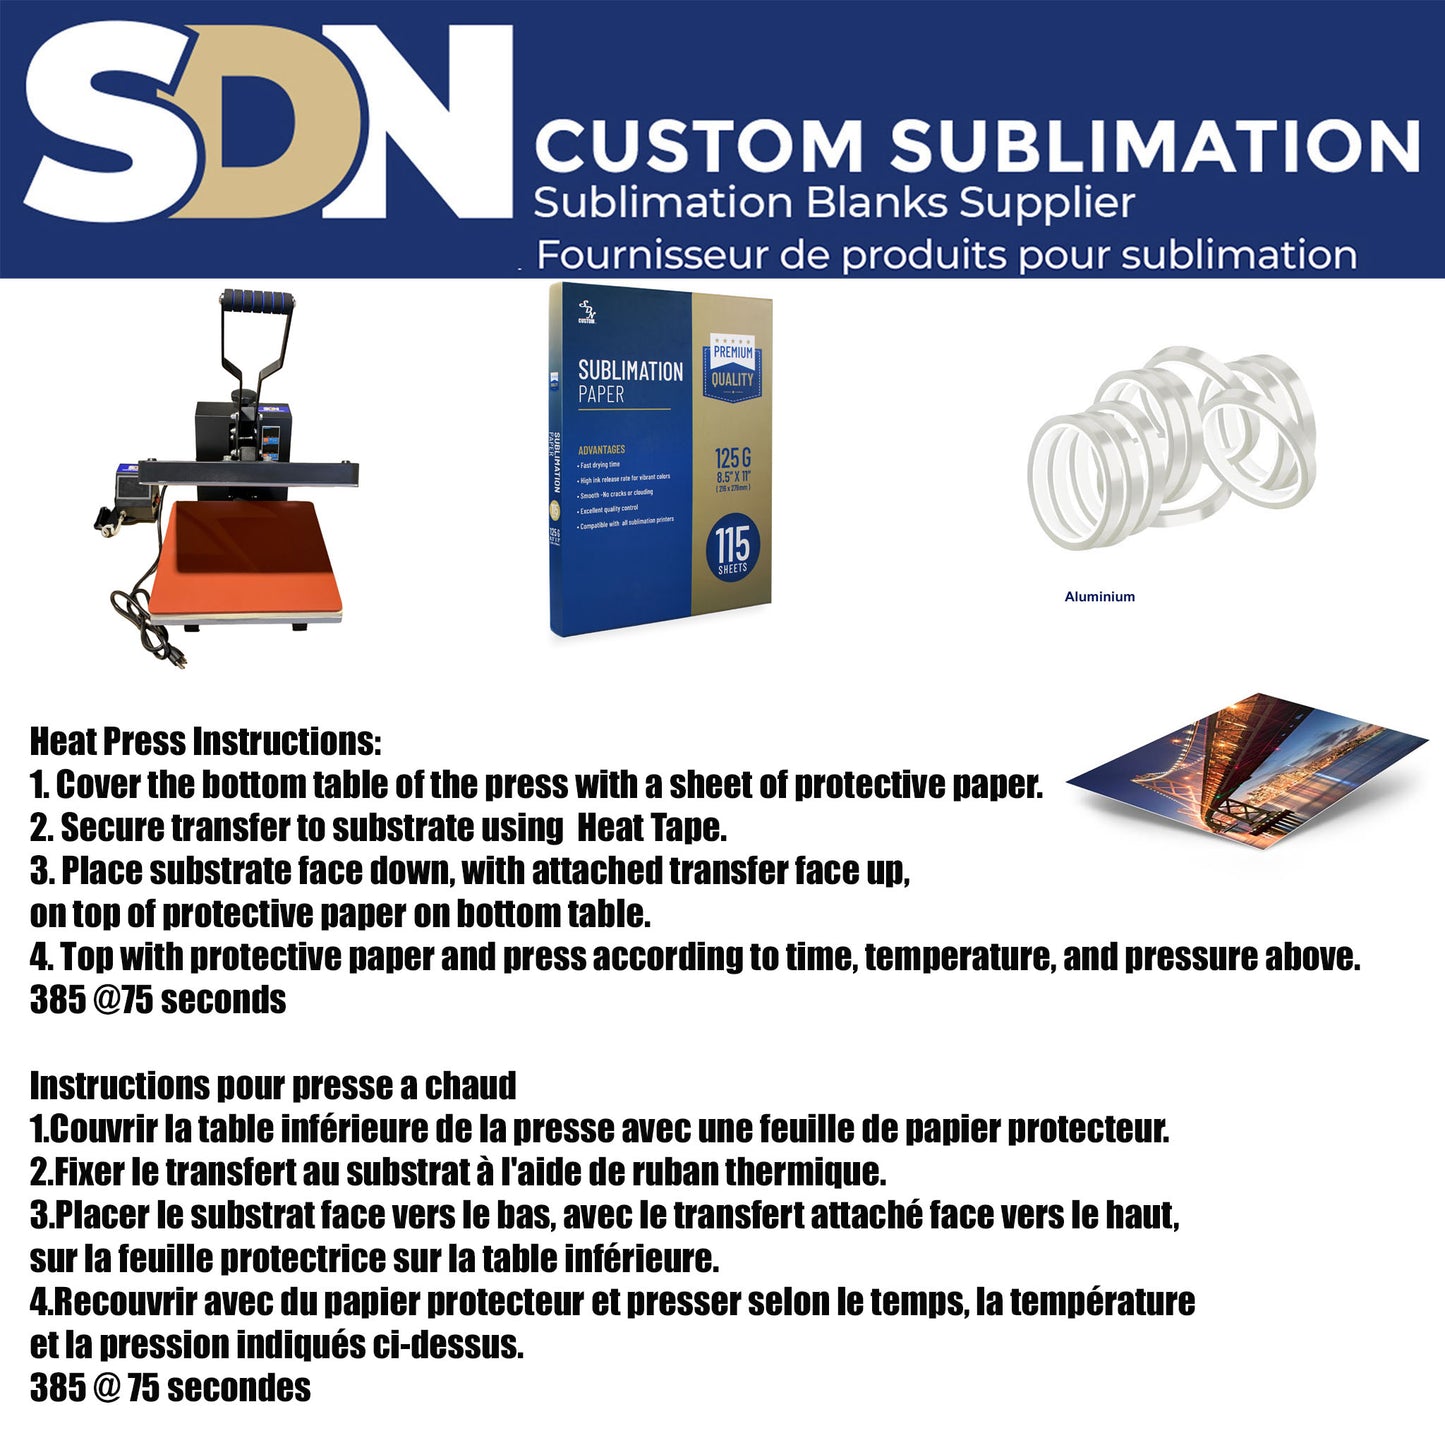 SDN Sublimation 11,8x15,7 pouces Panneau métallique en aluminium vierge (AVEC TROU)